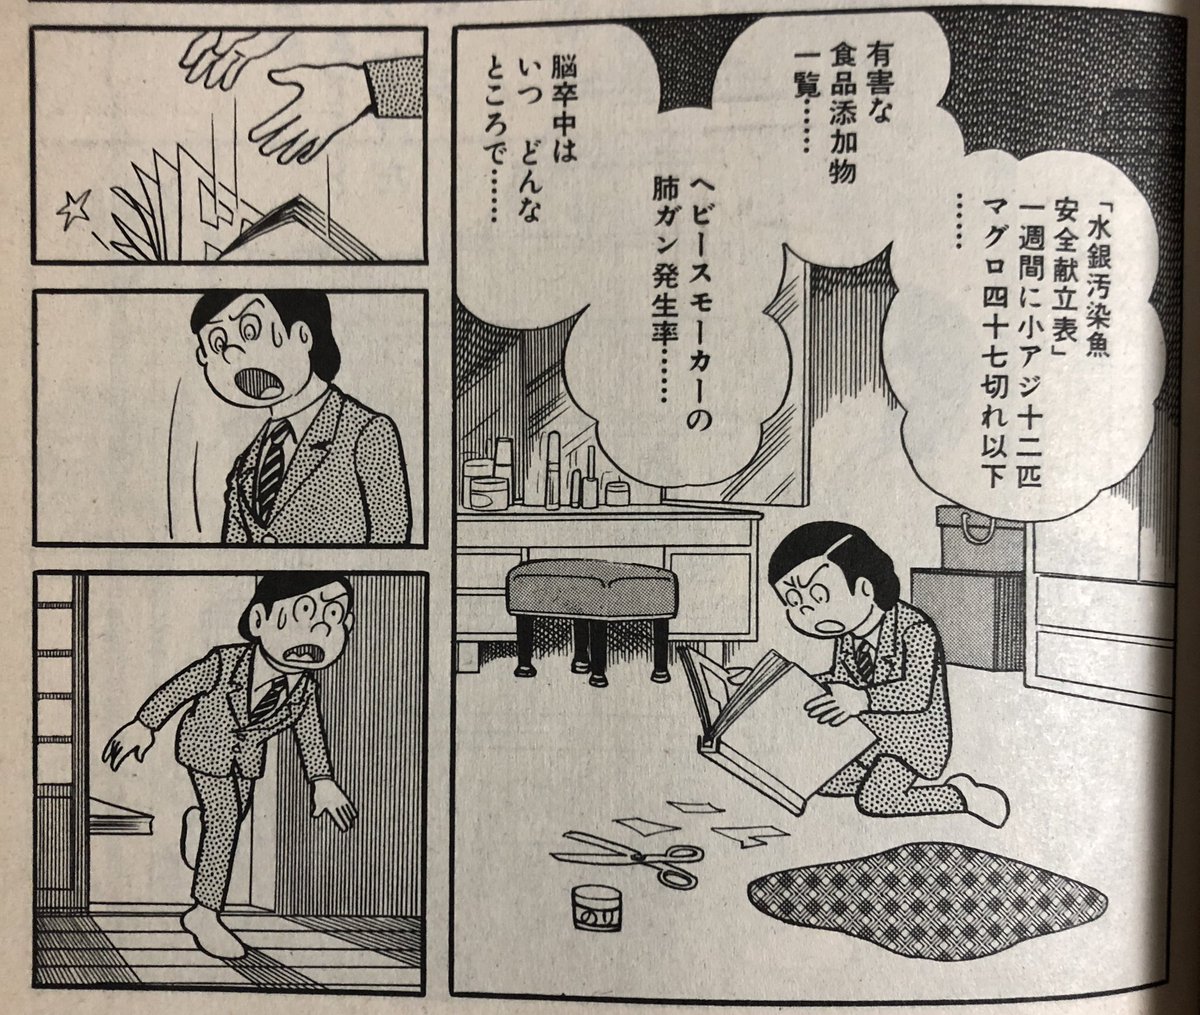 ショウタ Show1987 さんの漫画 198作目 ツイコミ 仮